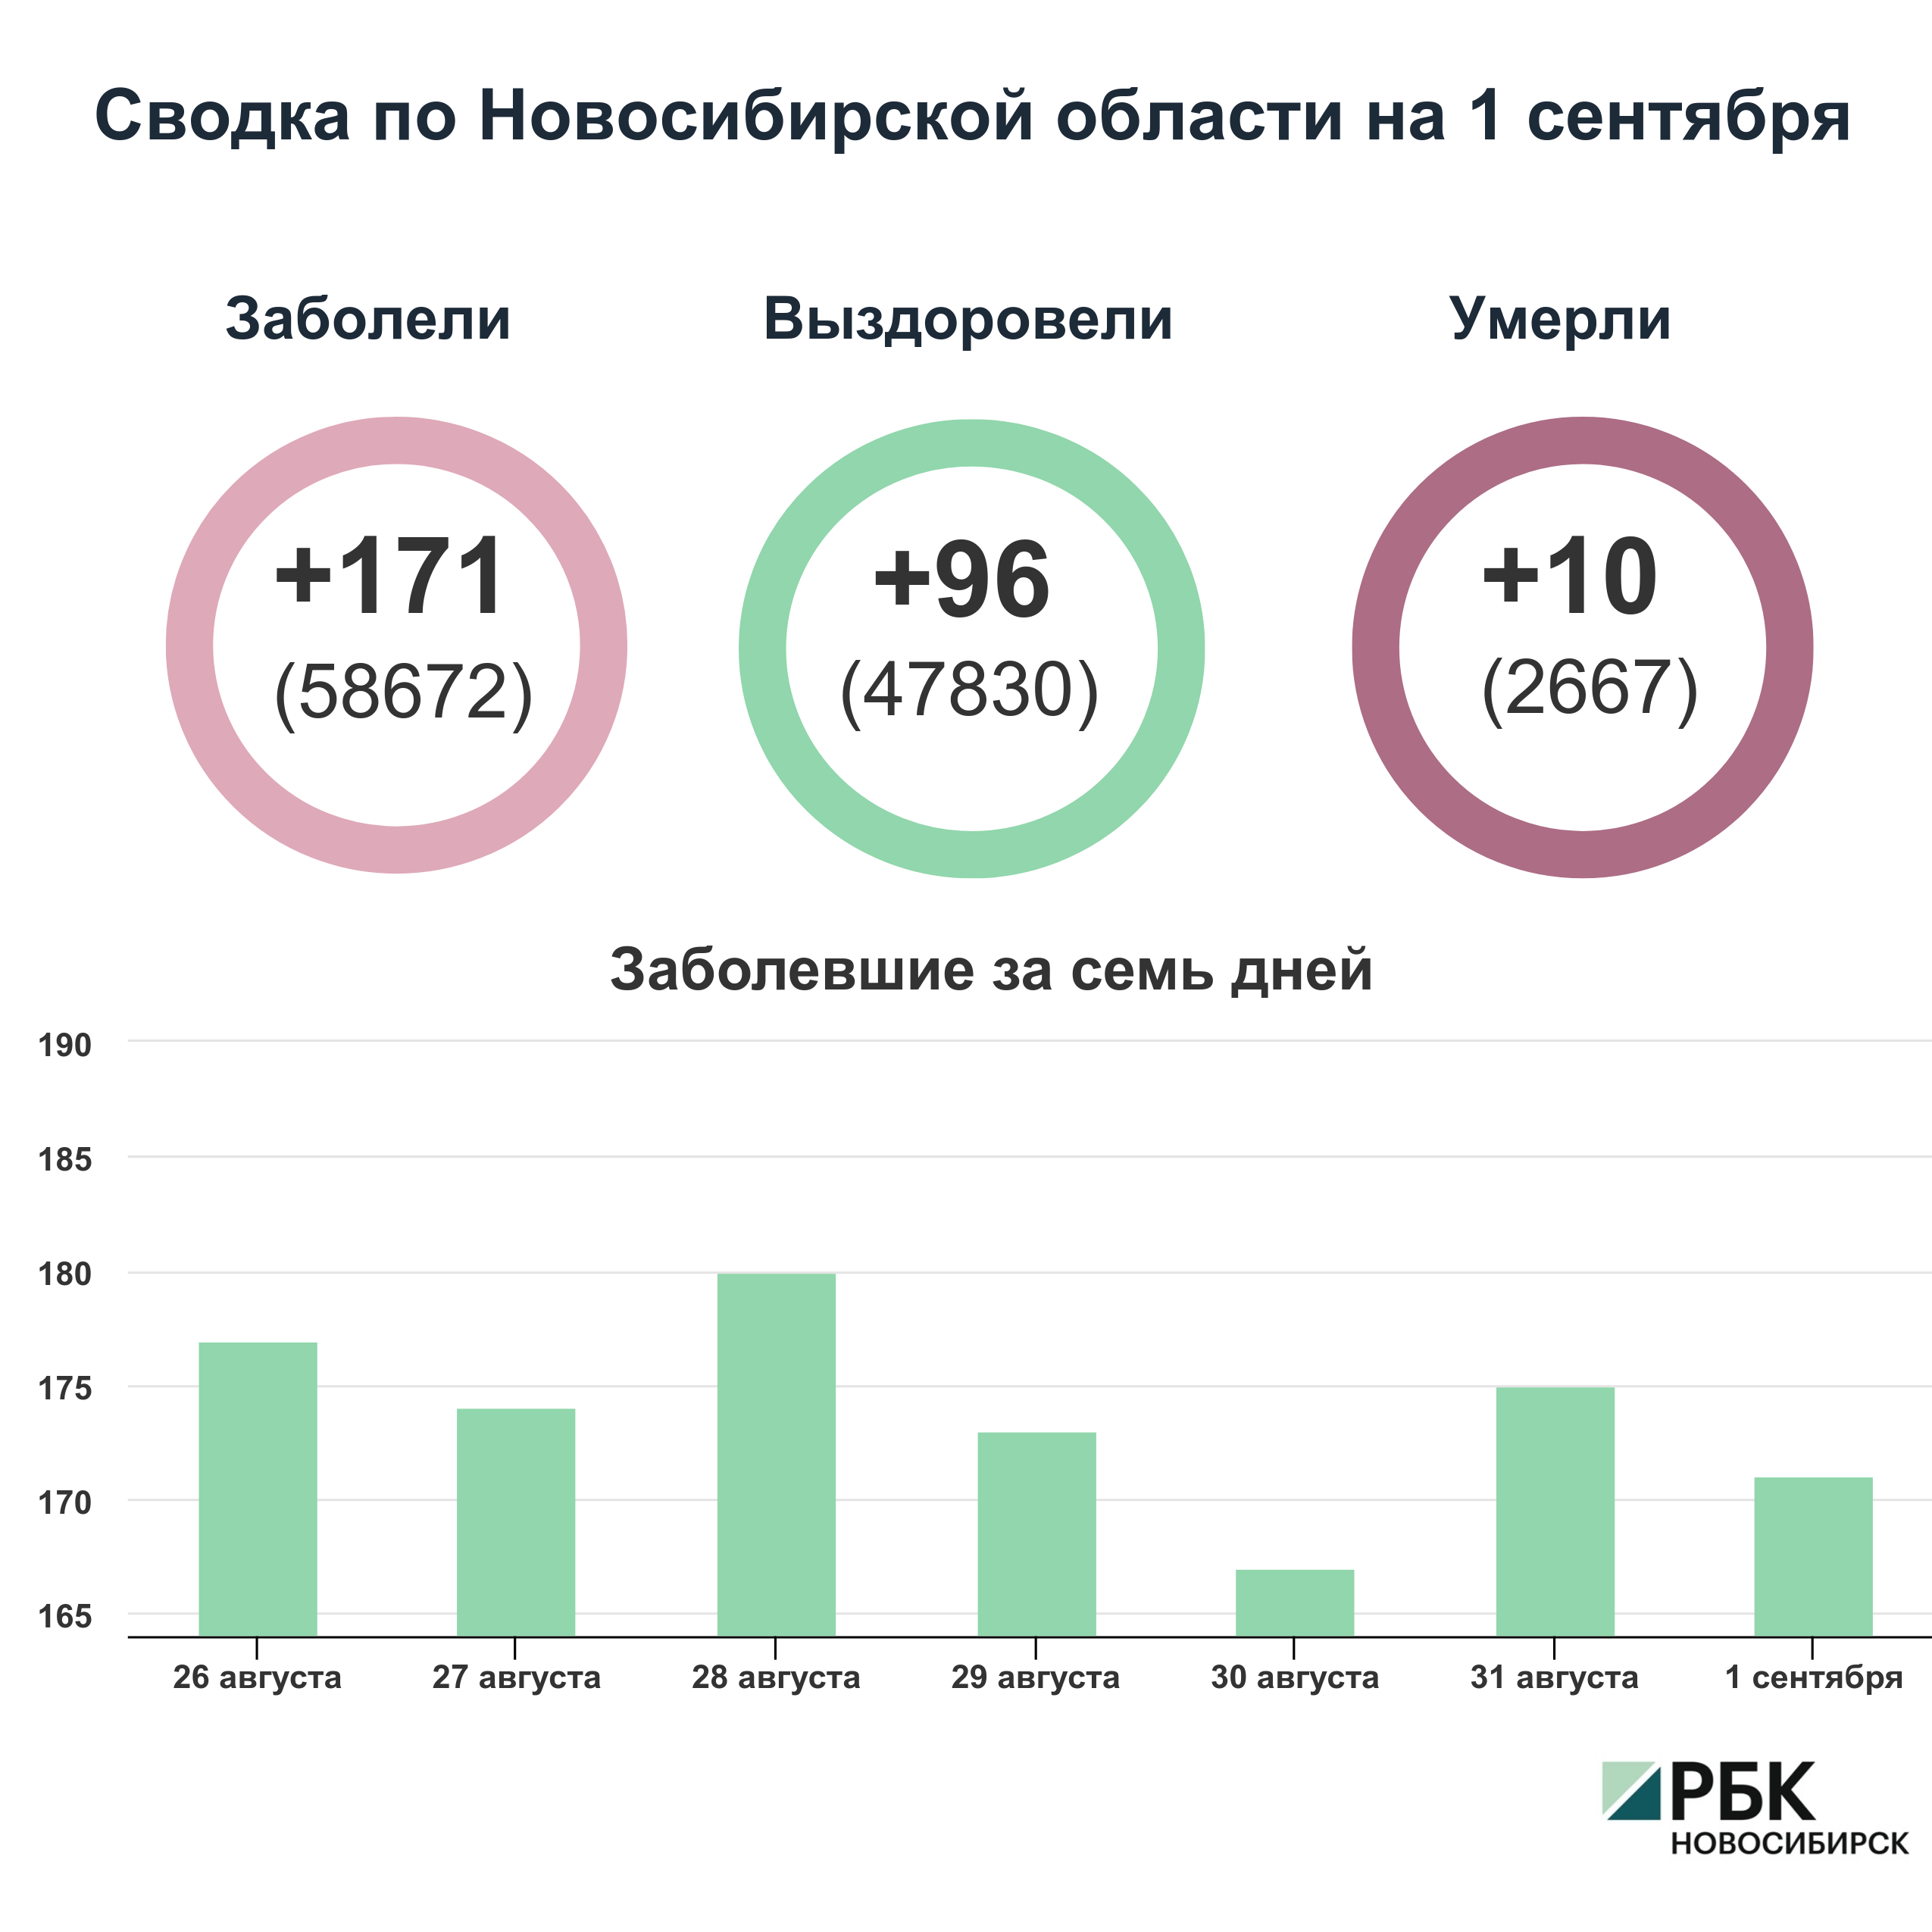 Коронавирус в Новосибирске: сводка на 1 сентября